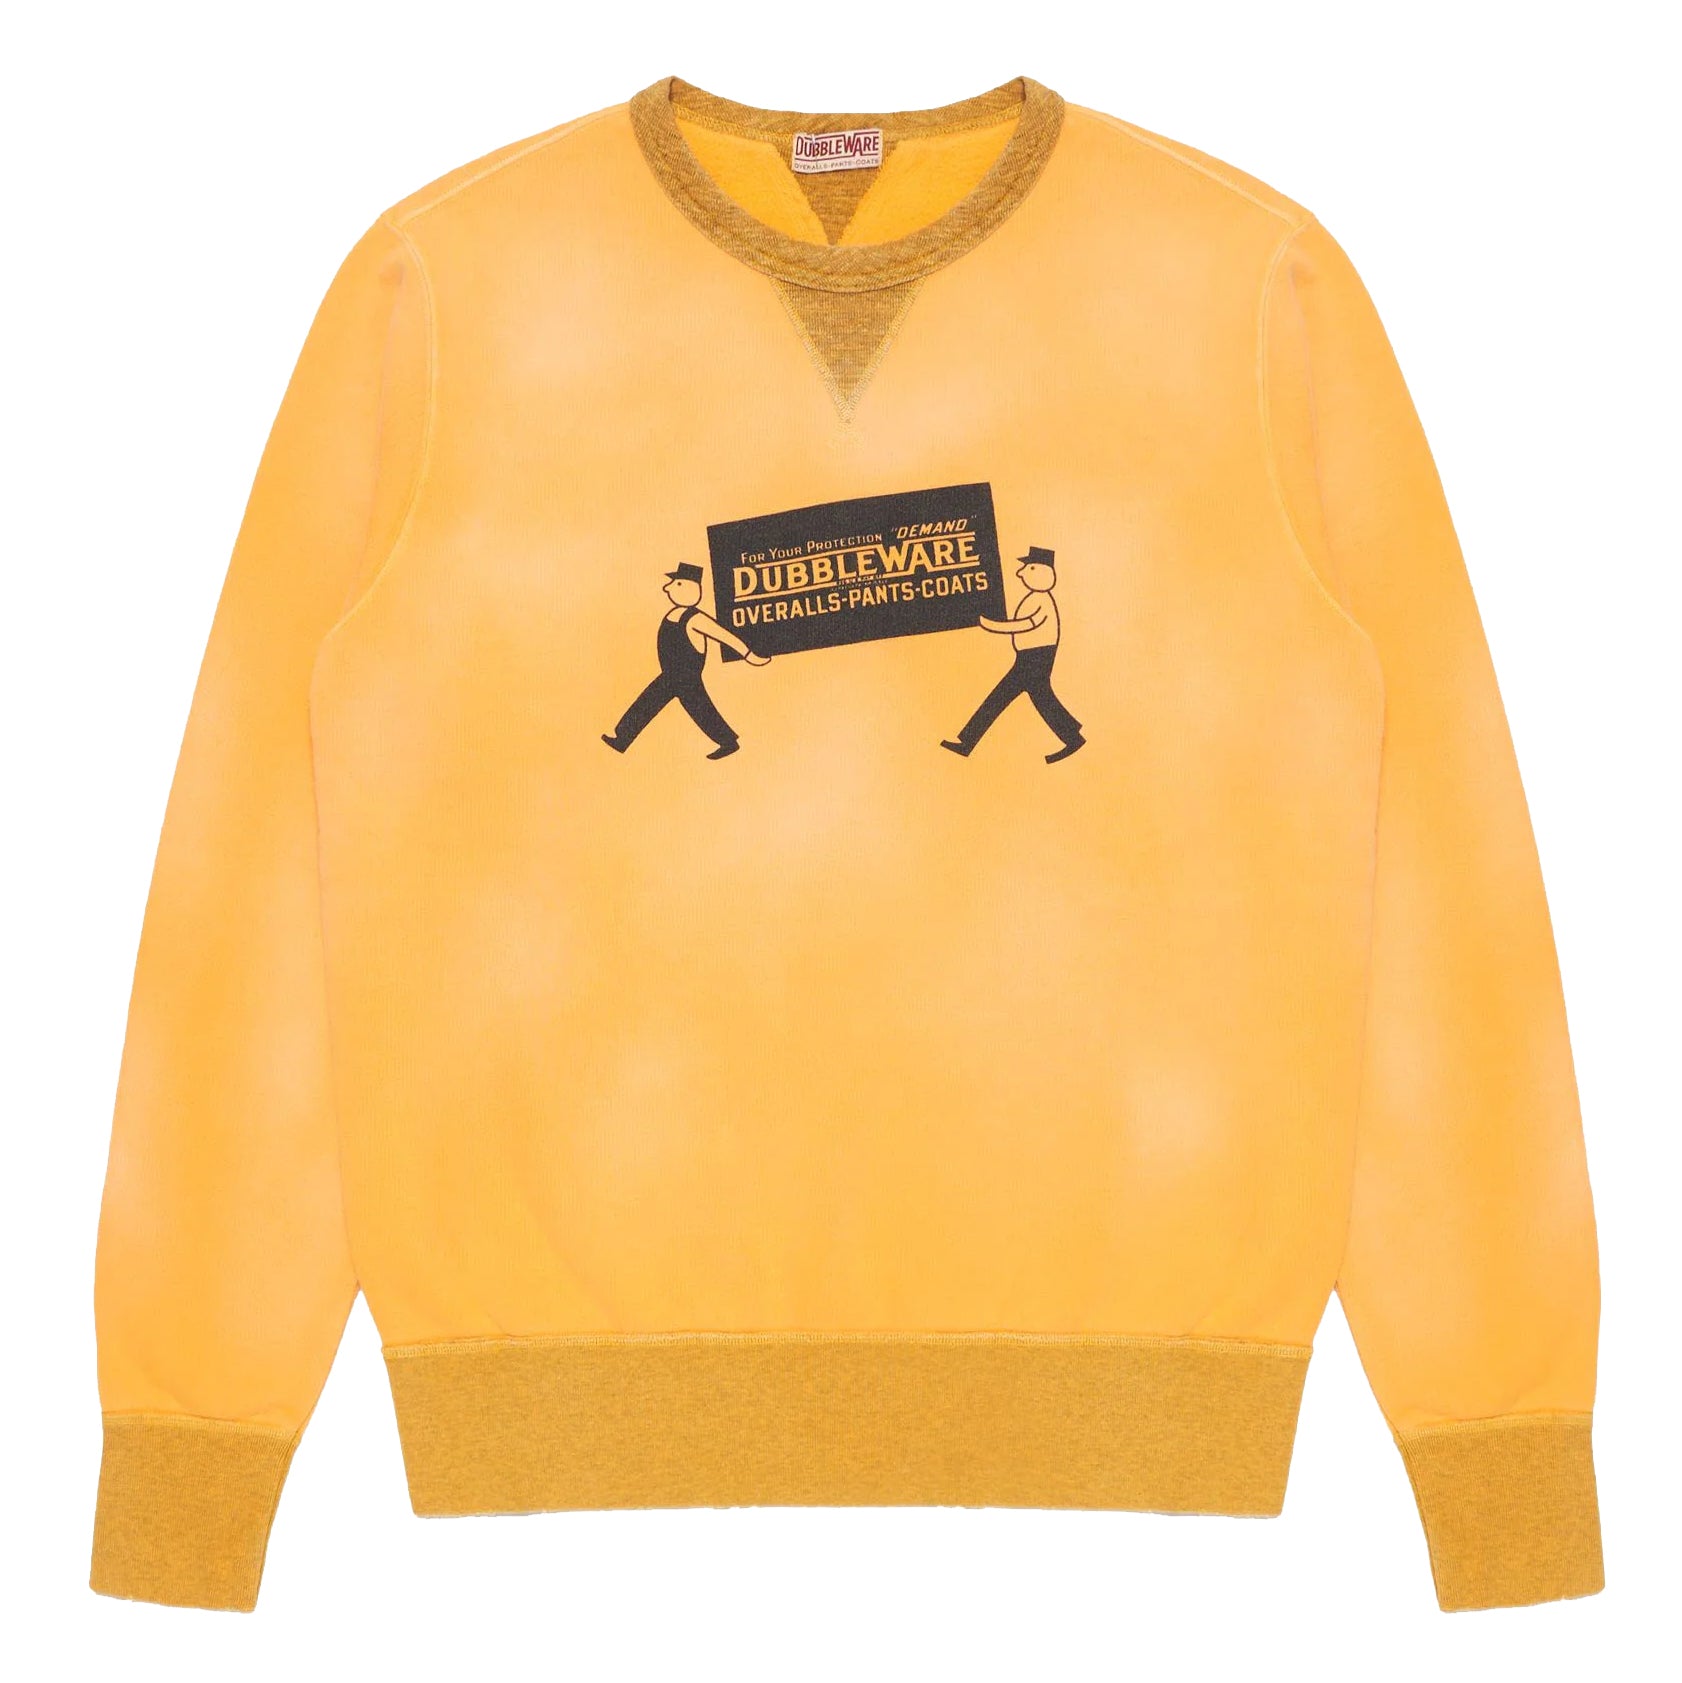 Billboard Vintage Sweatshirt - Olympic Yellow